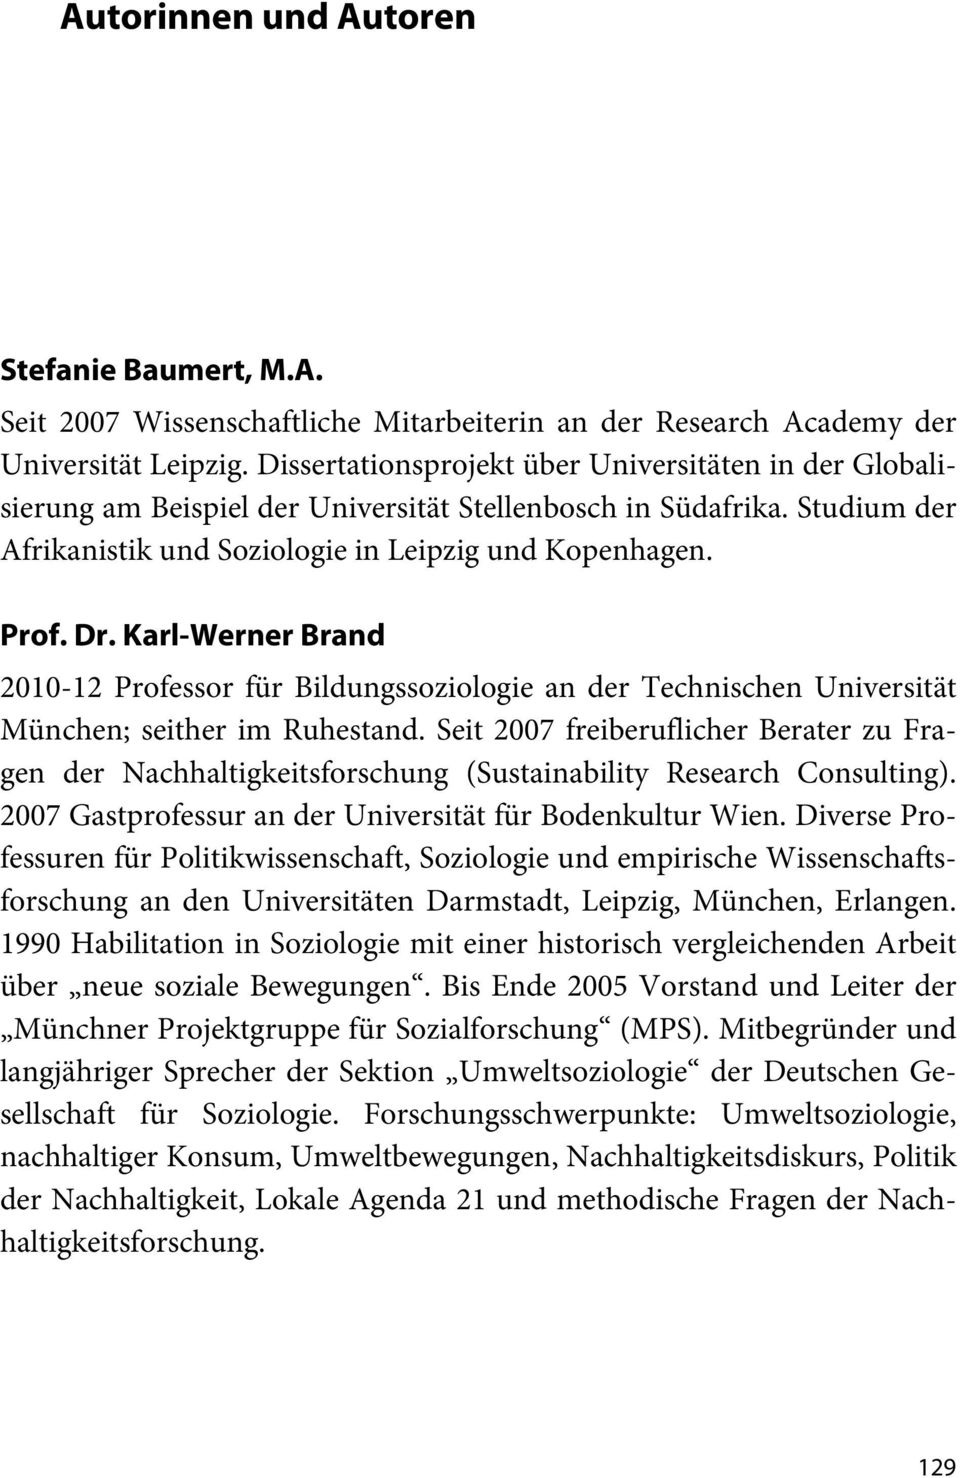 Karl-Werner Brand 2010-12 Professor für Bildungssoziologie an der Technischen Universität München; seither im Ruhestand.